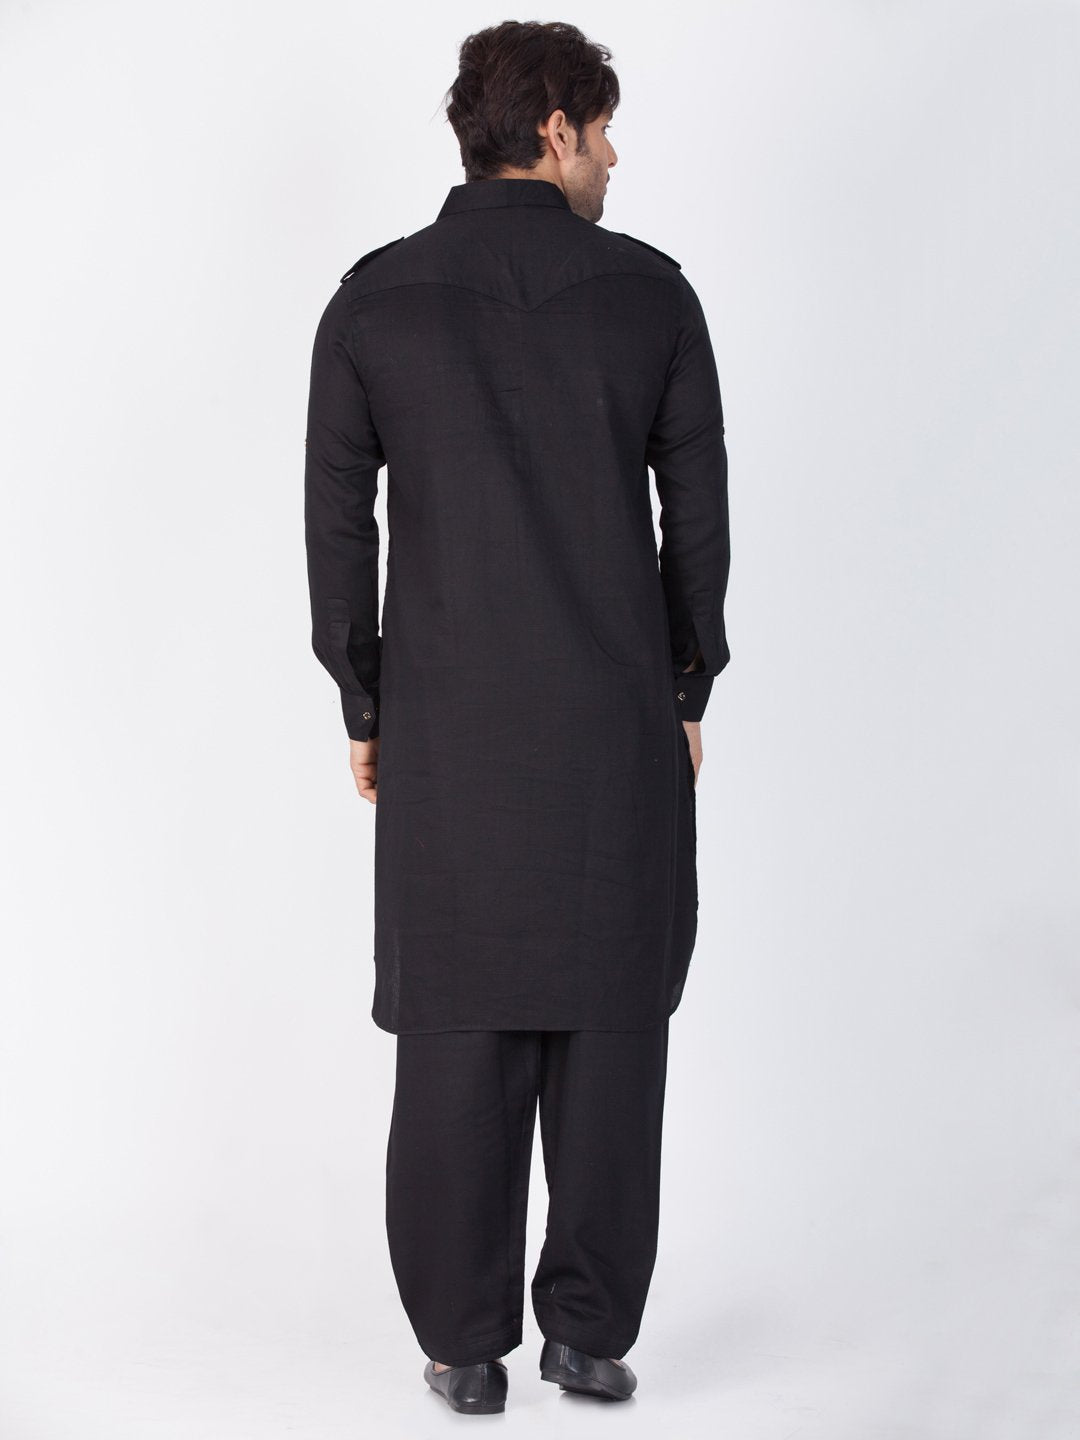 Men's Black Cotton Pathani Suit Set